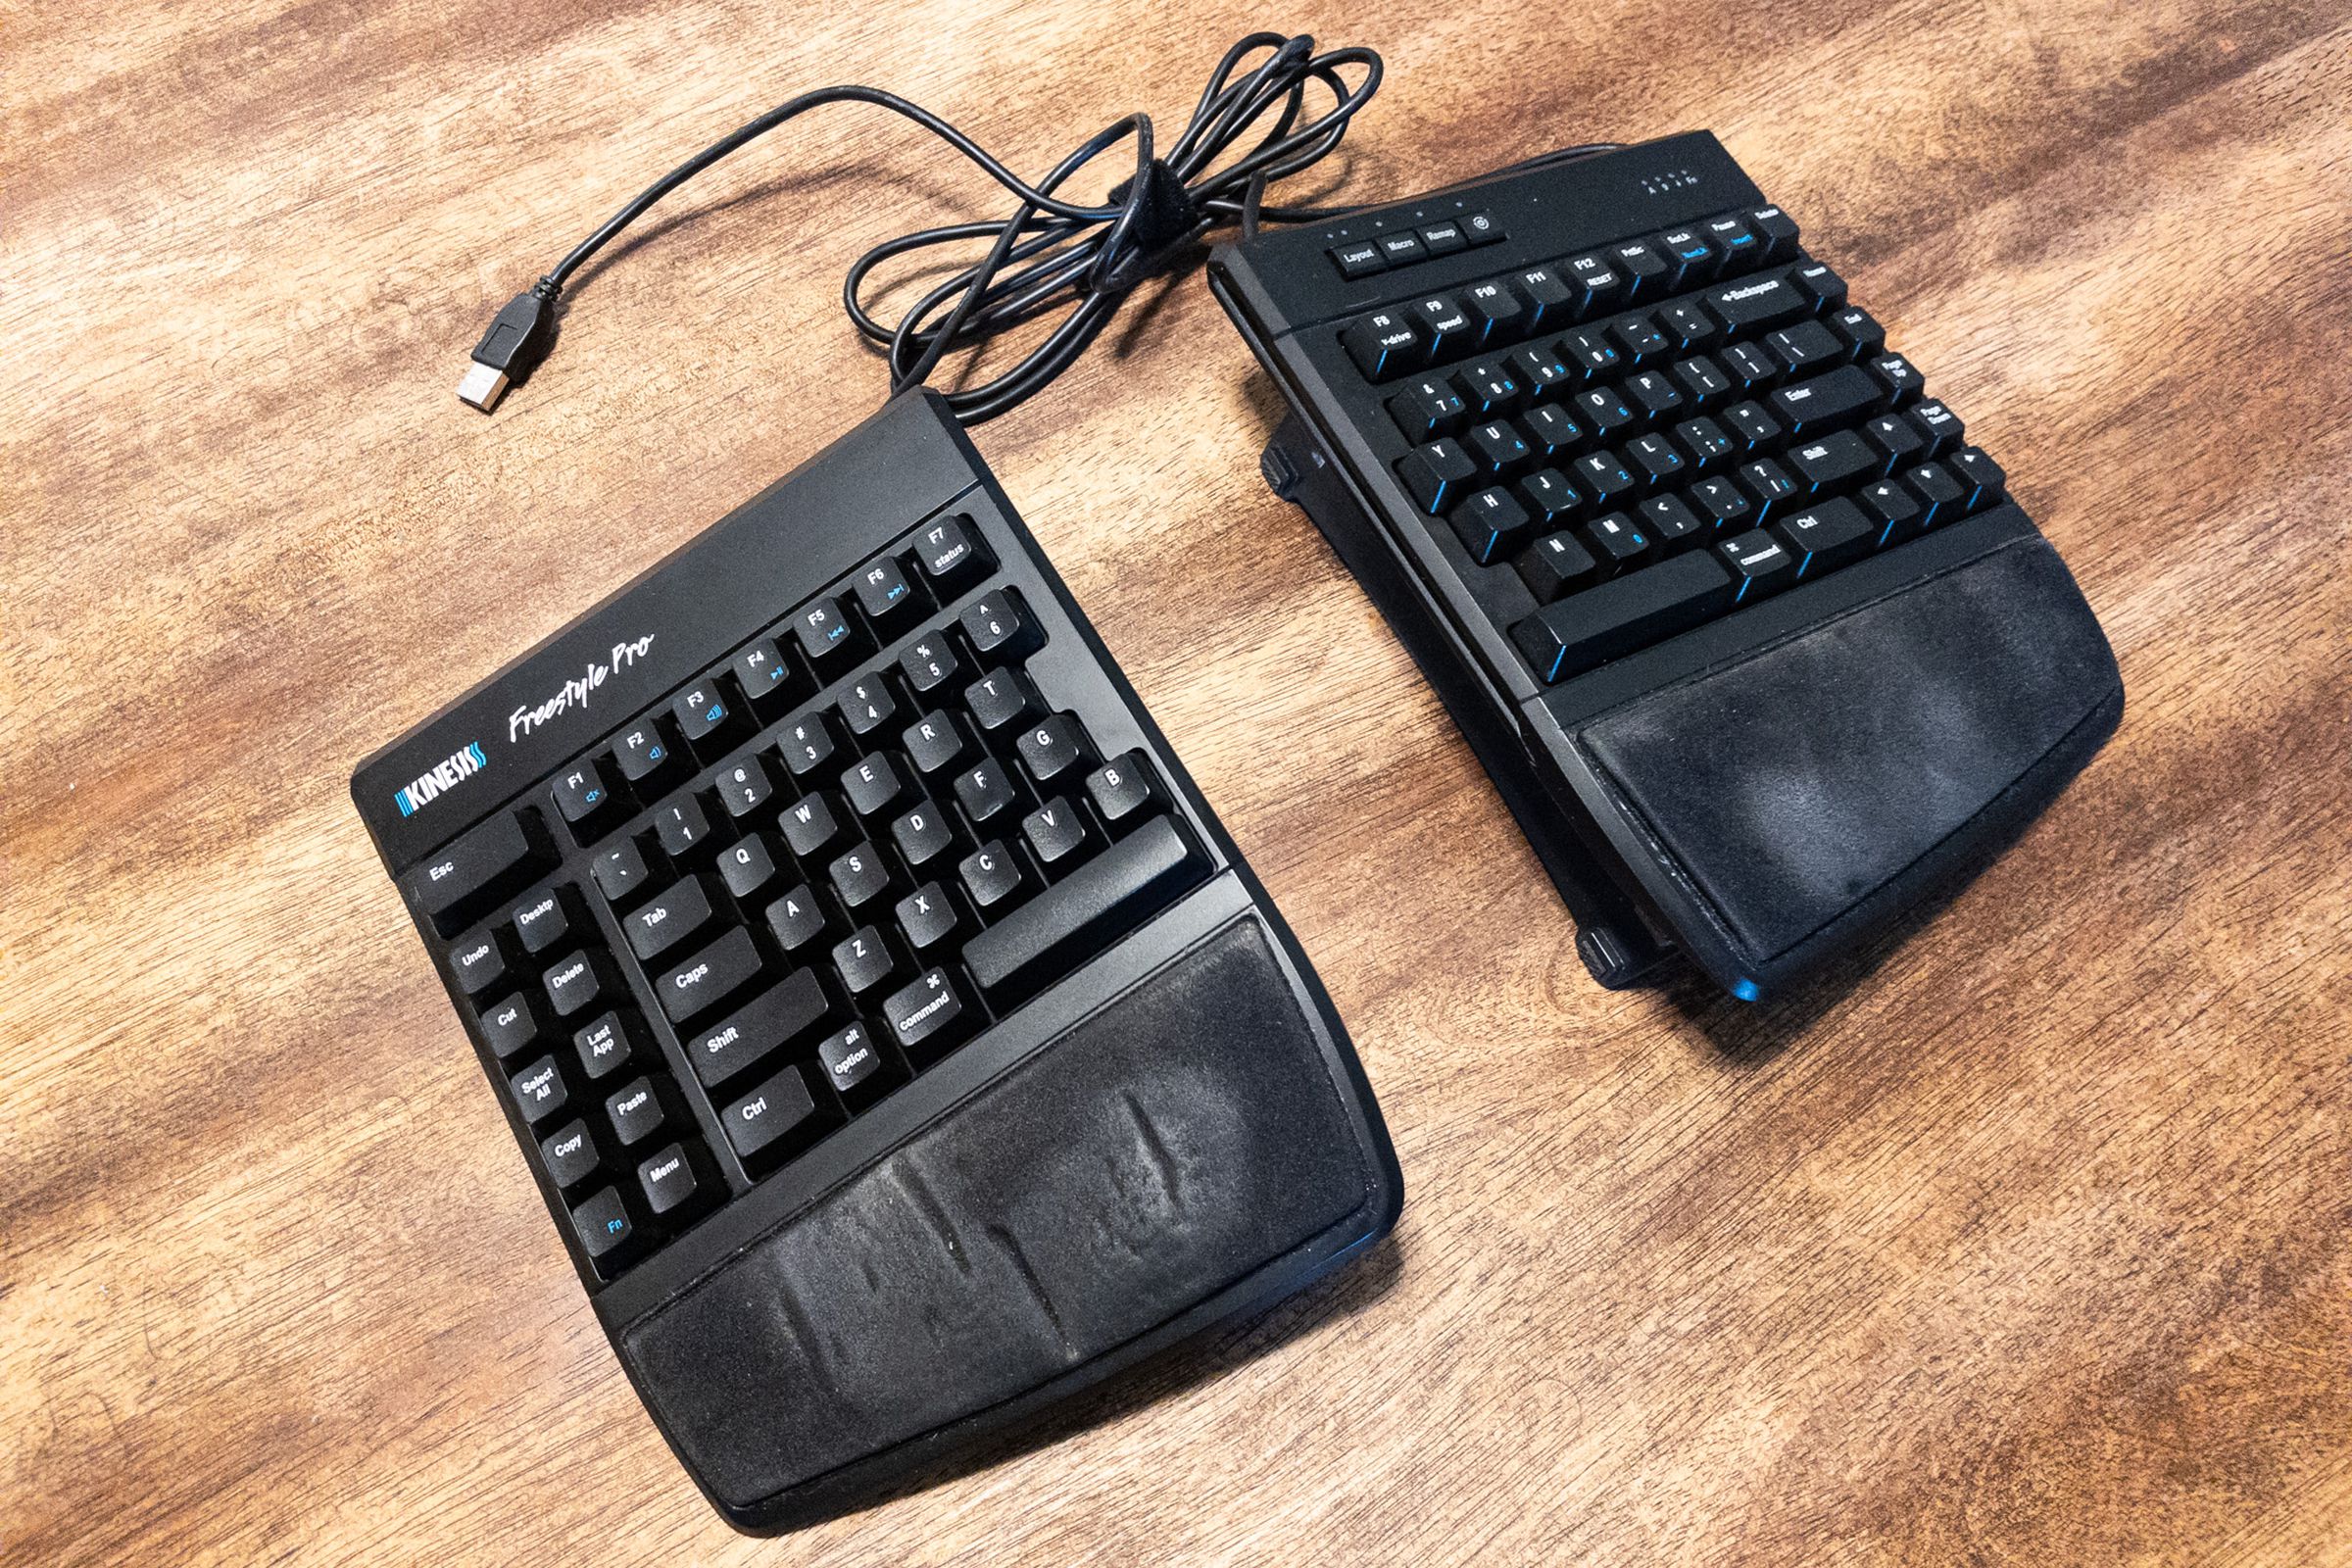 Kinesis Freestyle Pro split keyboard on a desk. 